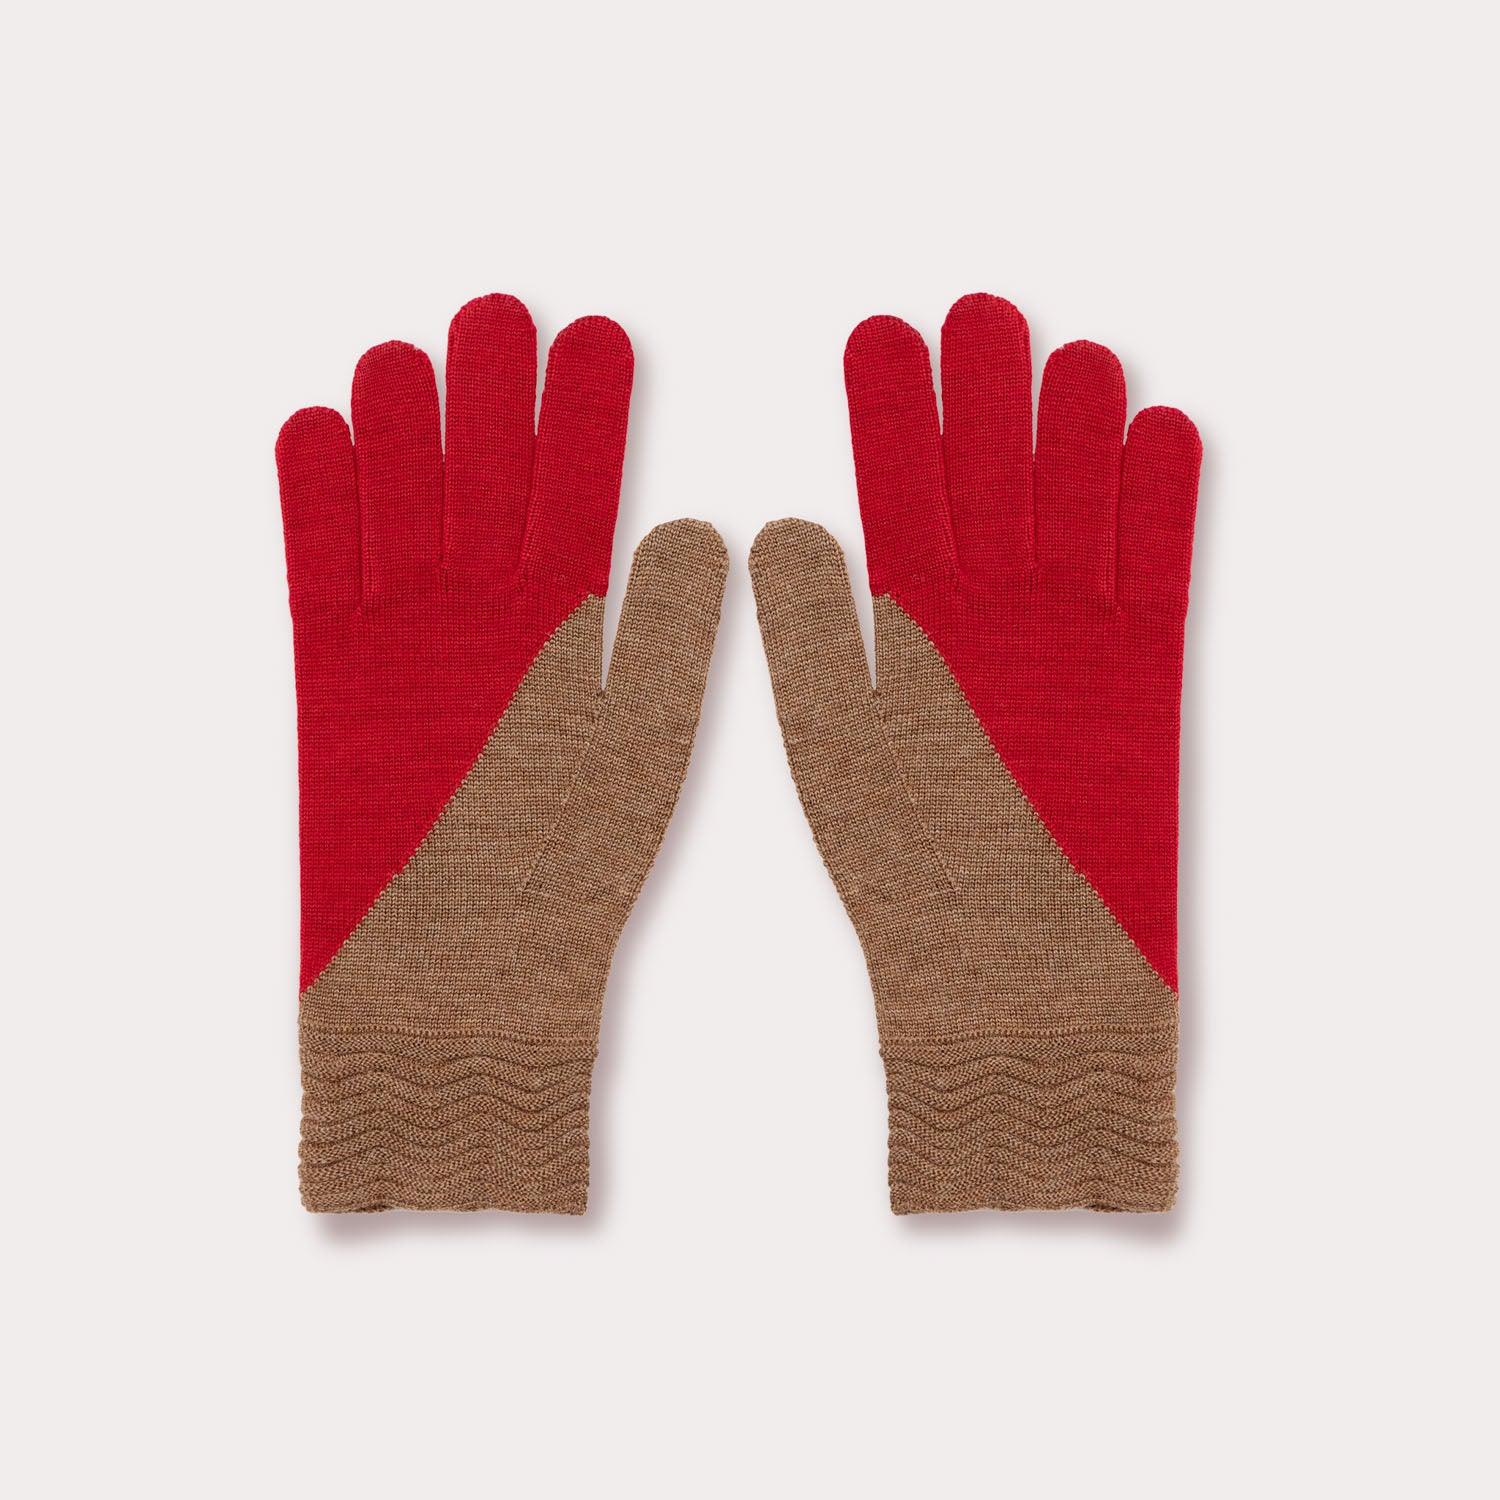 Tech Gallery Wool Gloves by Seymoure Gloves.